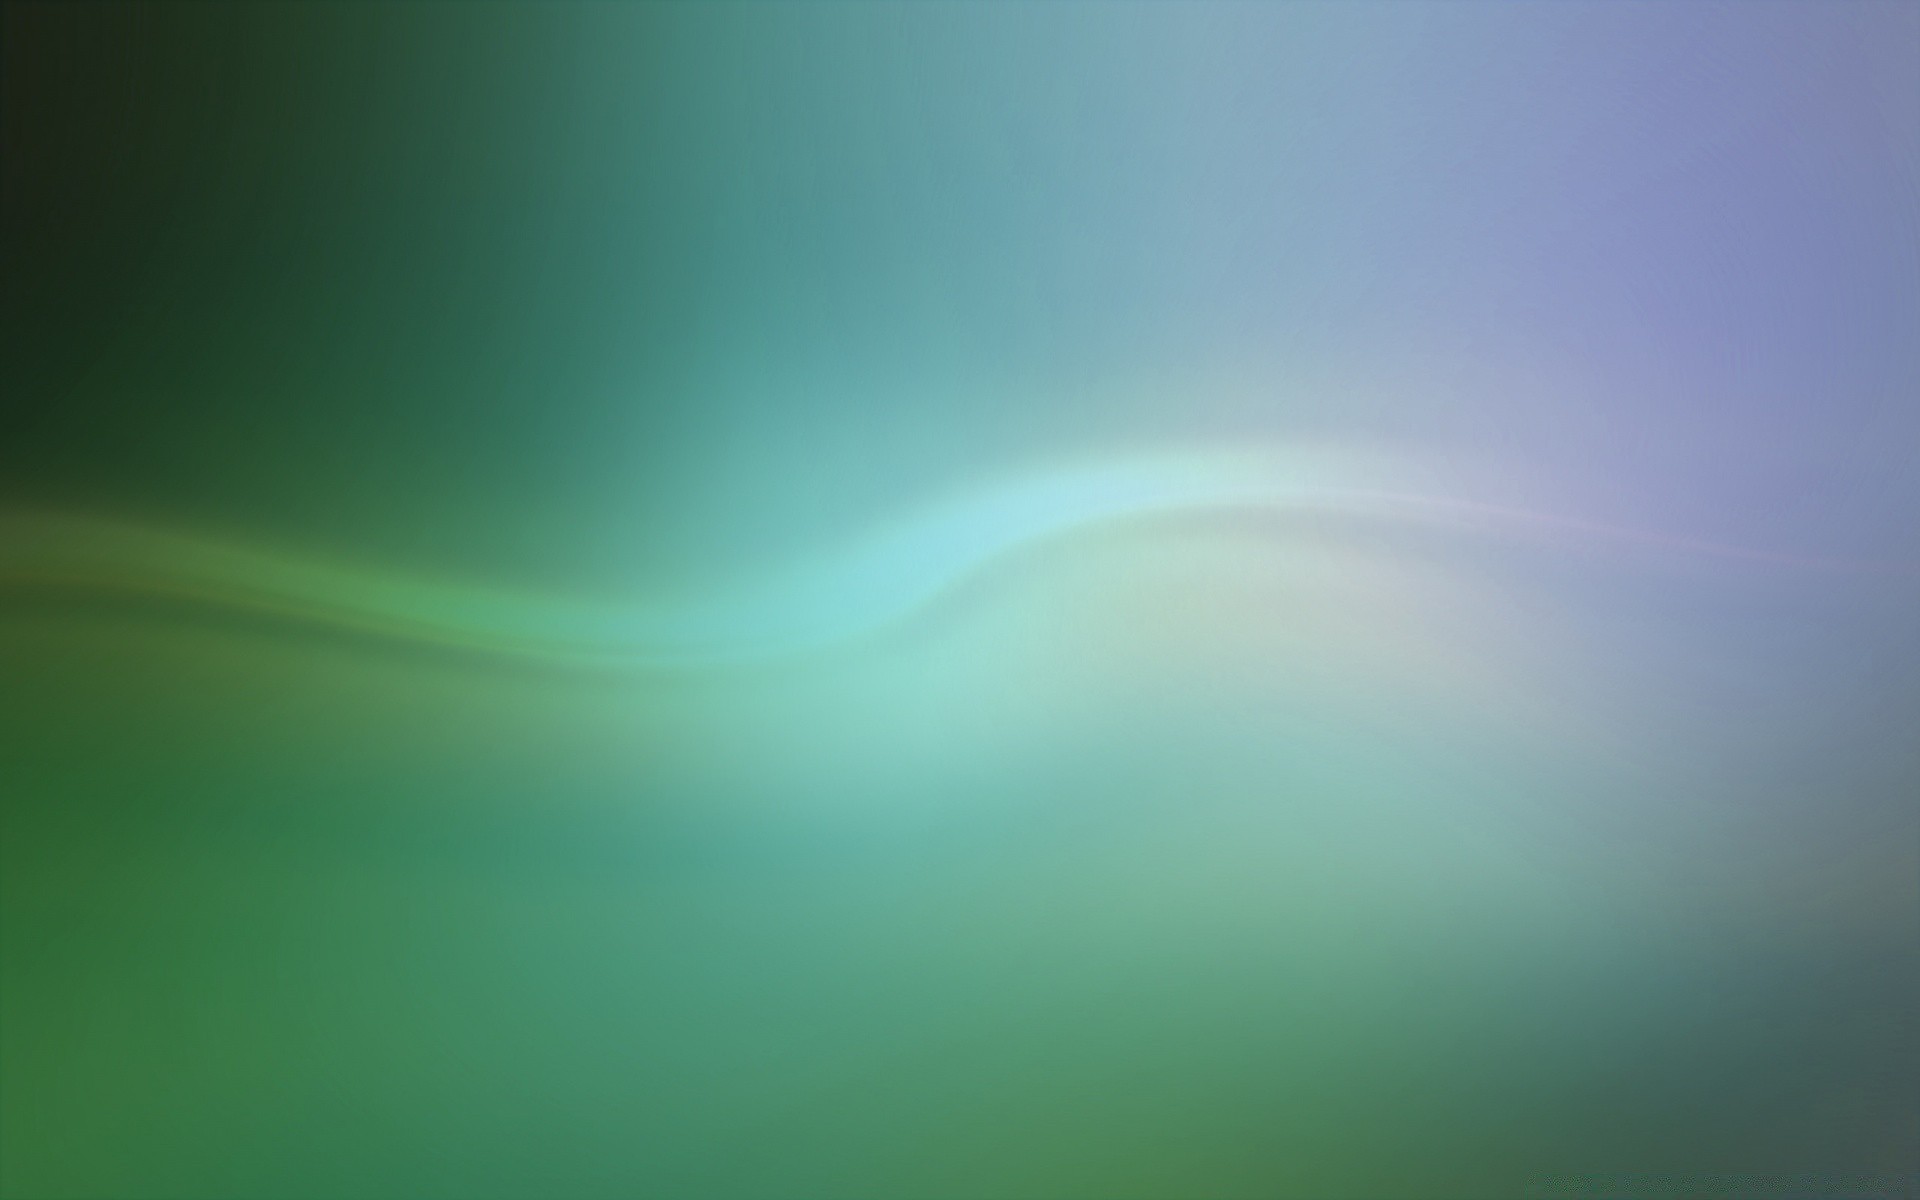 яркие краски аннотация свет цвет рабочего стола фон искусство обои небо пространство размытость график иллюстрация пейзаж текстура природа дым дизайн шаблон